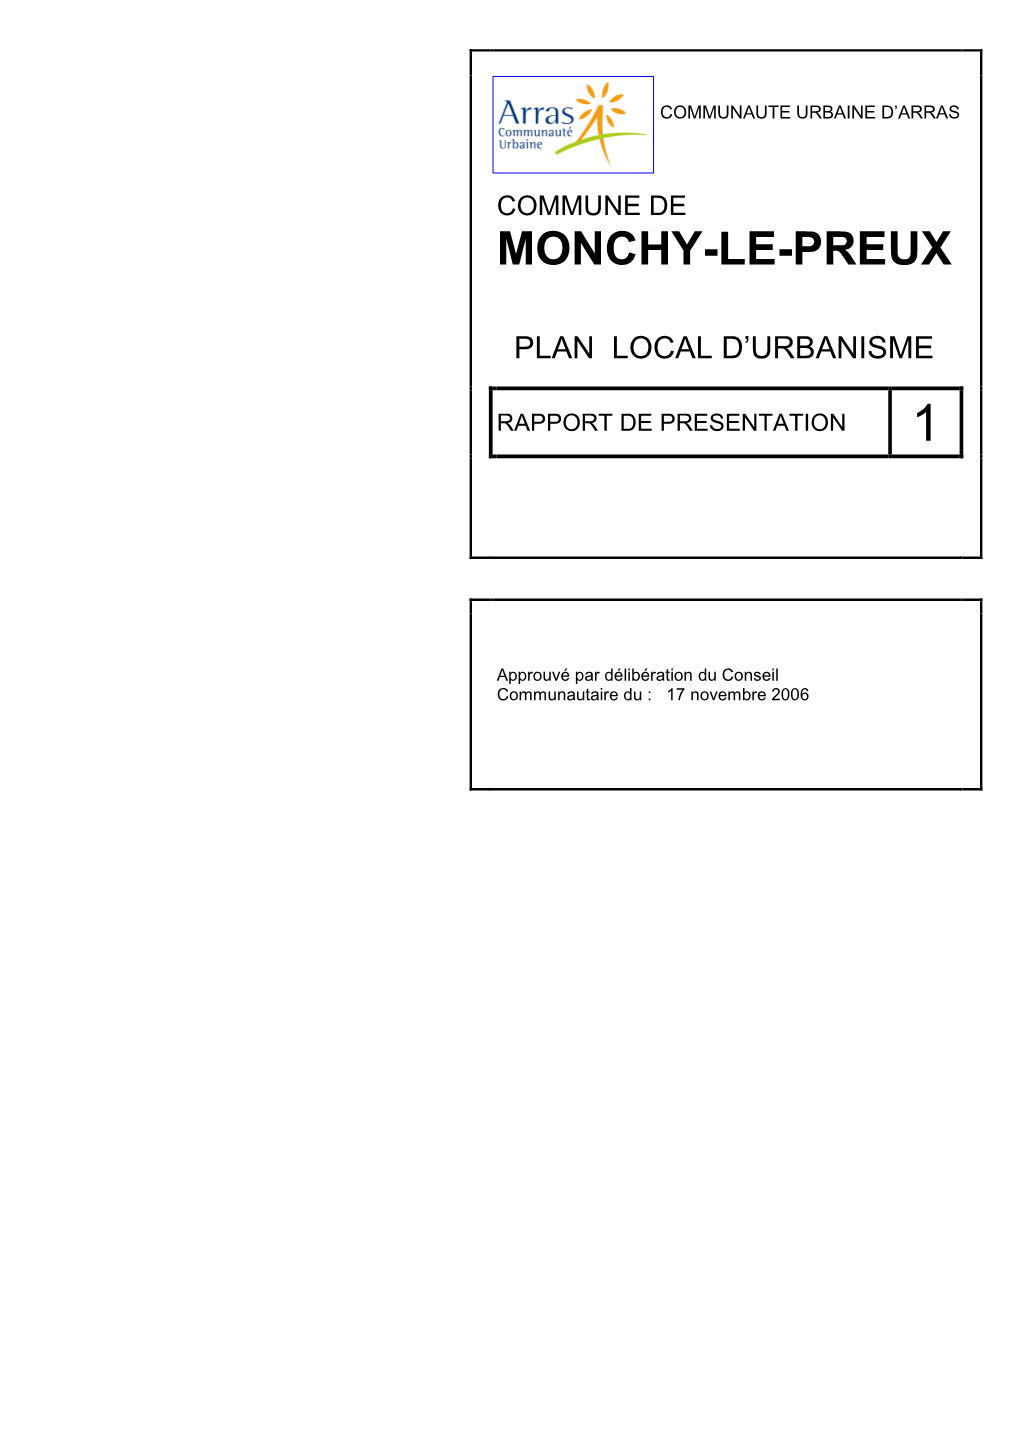 Monchy-Le-Preux